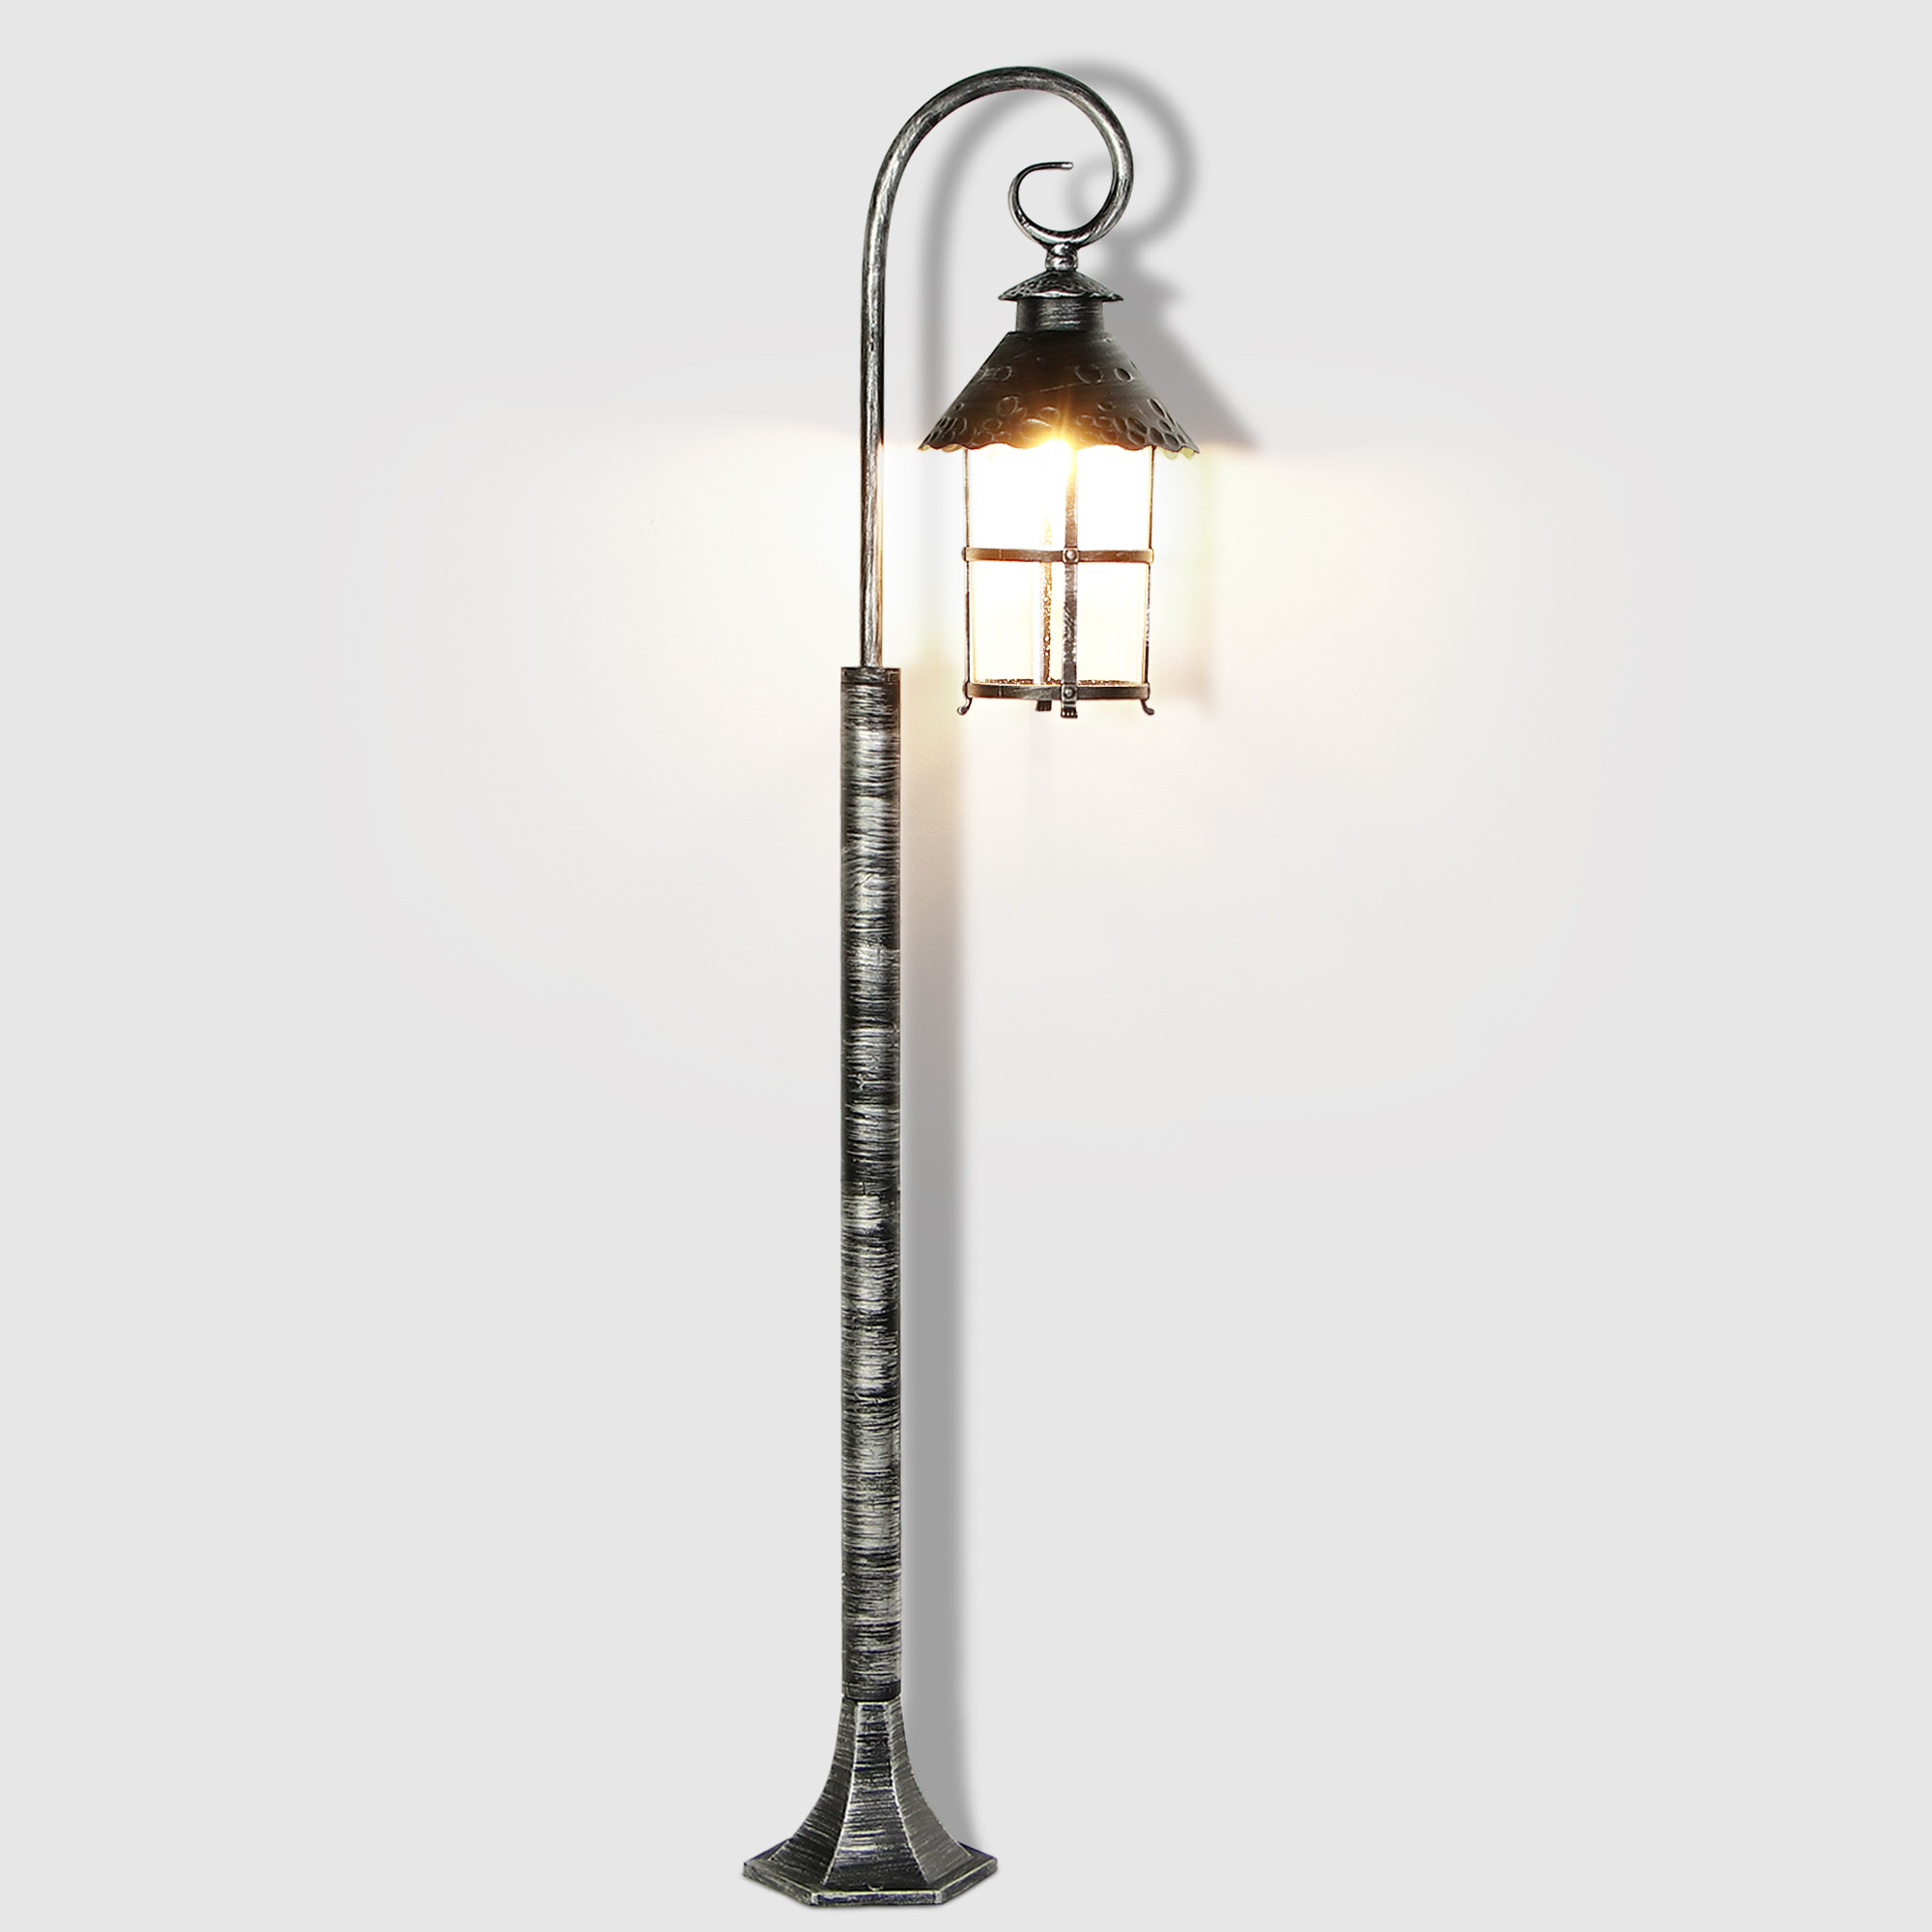 Светильник садовый Amber Lamp 8737 напольный IP23 E27 100Вт, чёрное серебро, цвет прозрачный, чёрное серебро - фото 2